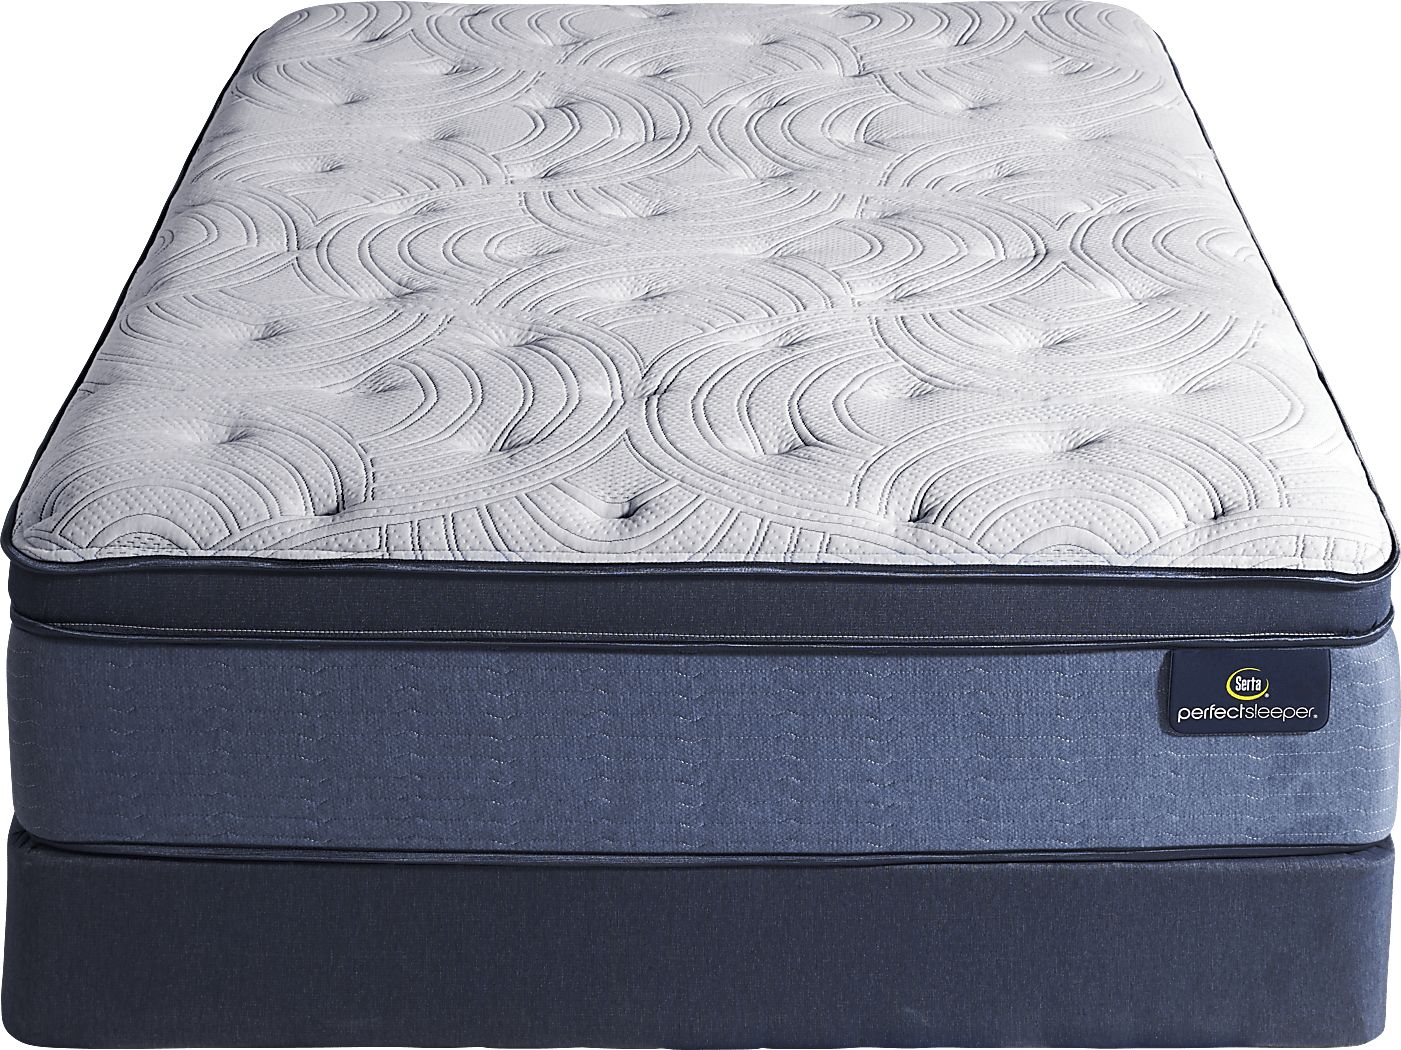 serta perfect sleeper dunbrook plush eurotop mattress set